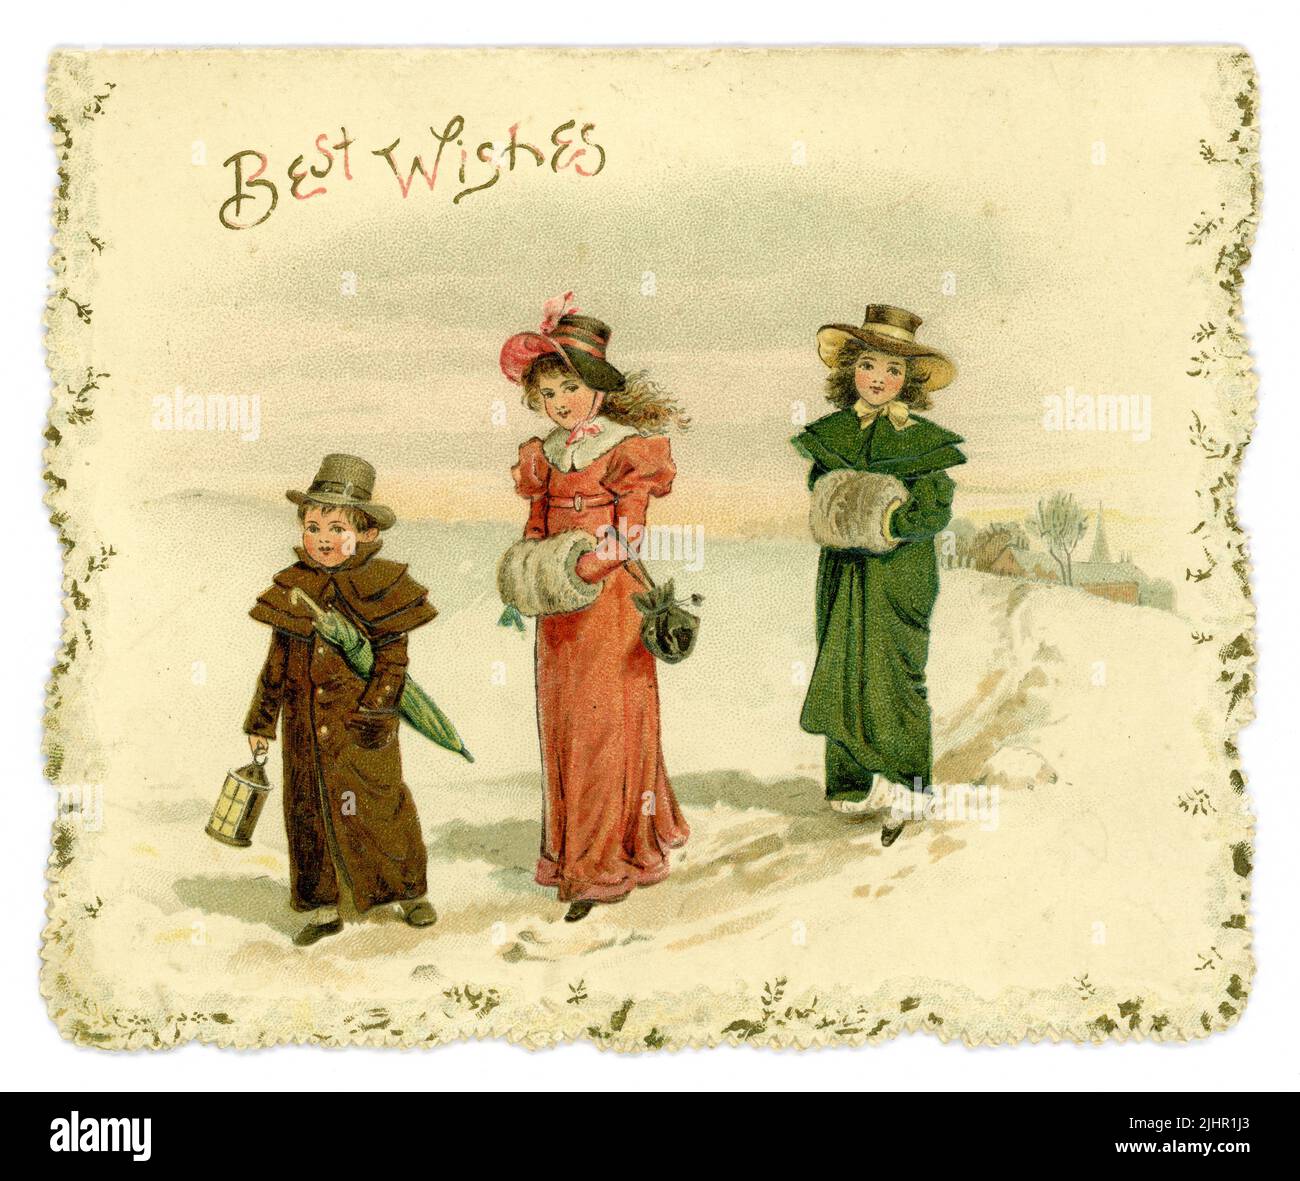 Original Edwardian Ära Weihnachtskarte, 'Wetten Wünsche' - Kinder im Regency-Stil (Regency war 1811-1820) Kleidung, die im Schnee läuft, ähnliche Online-Postkarte gesendet in USA. Datiert 1904 Stockfoto